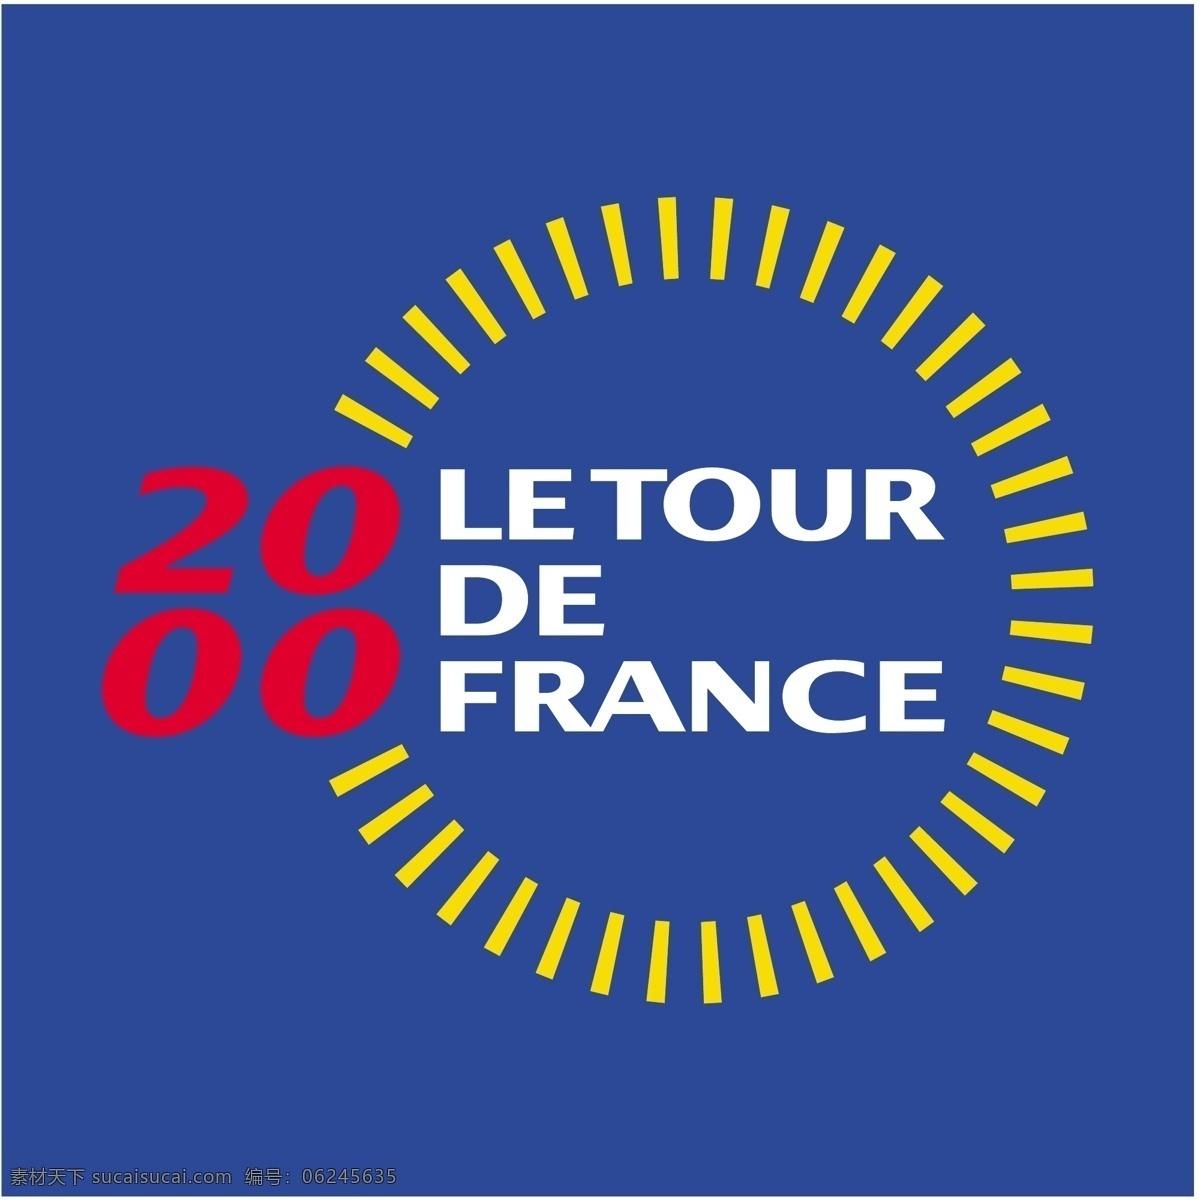 环法2000 法国 旅游 环法 le tour de france 环法的标志 环法的载体 标志环法 自行车赛 标志 环法矢量 矢量环法 艺术 载体 矢量图 建筑家居